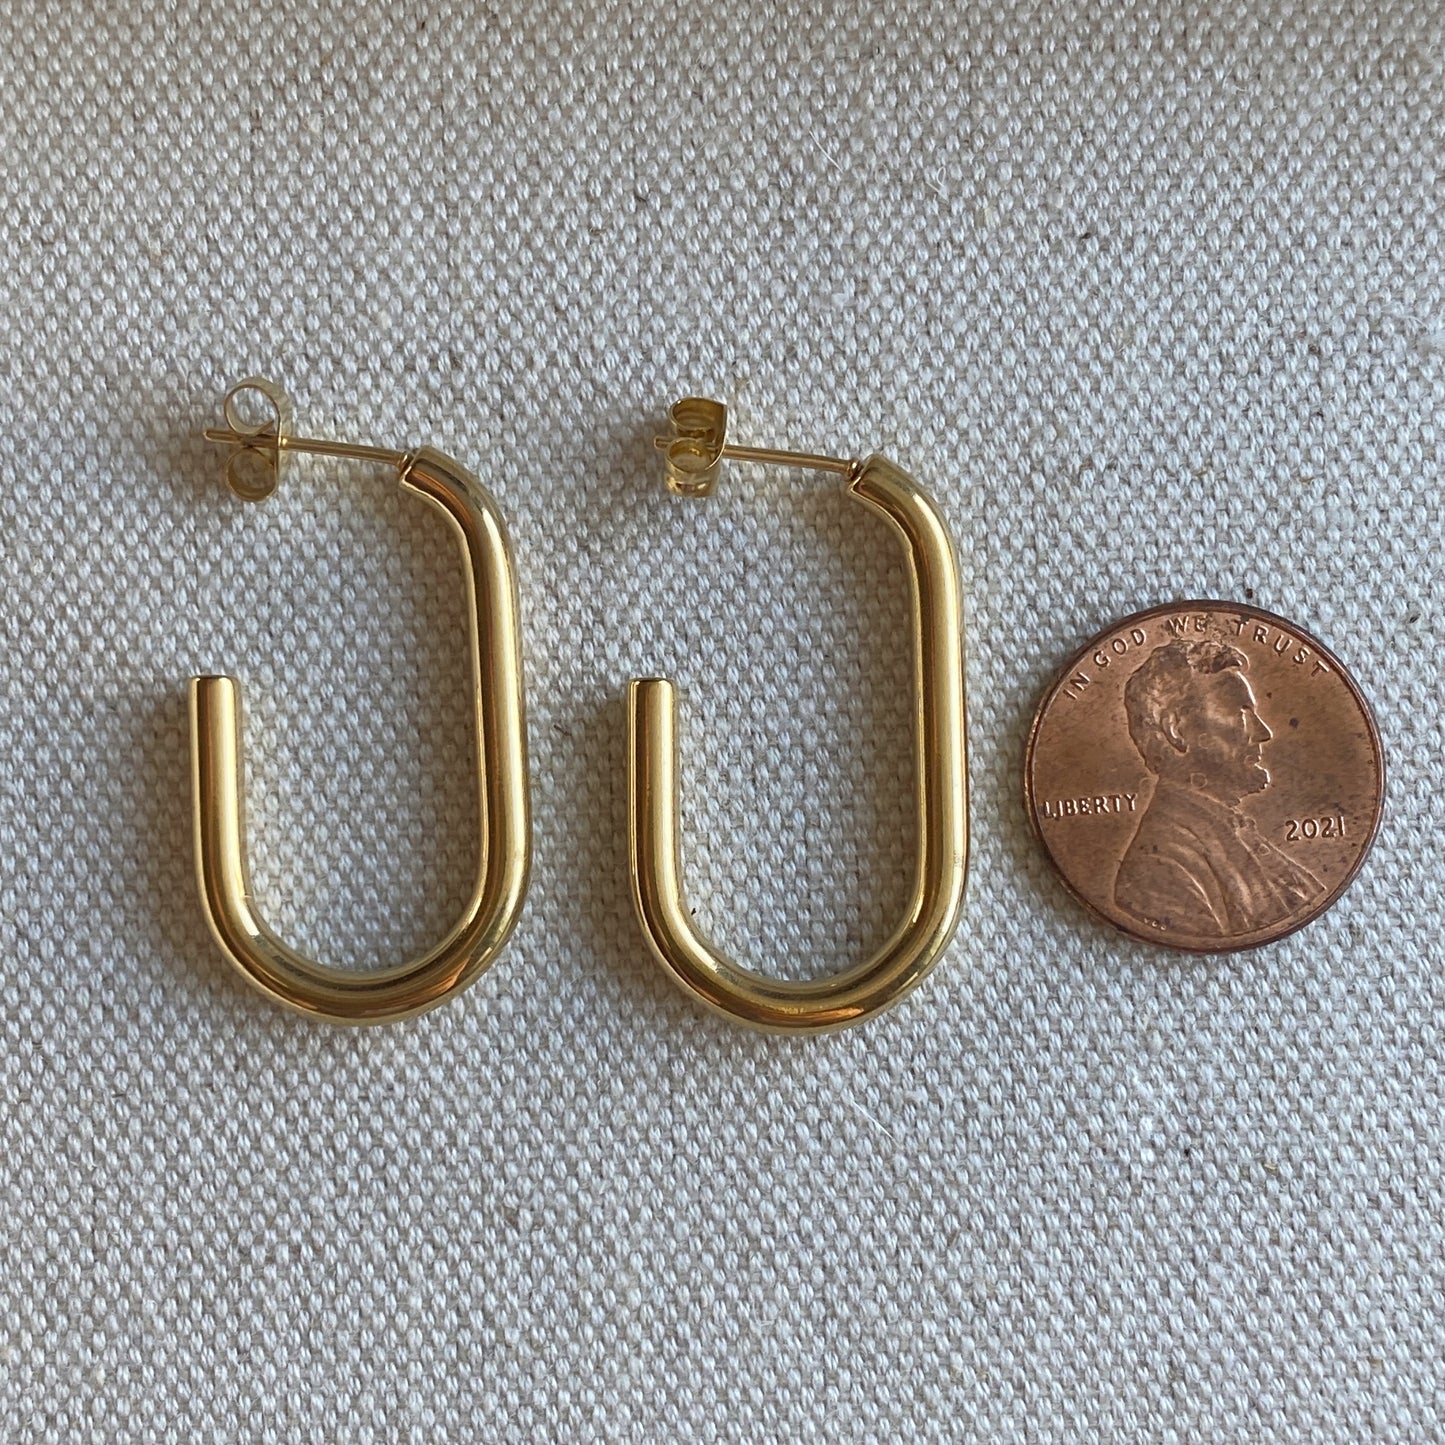 J Hoop Earrings Gold Stainless Steel Waterproof Hoops